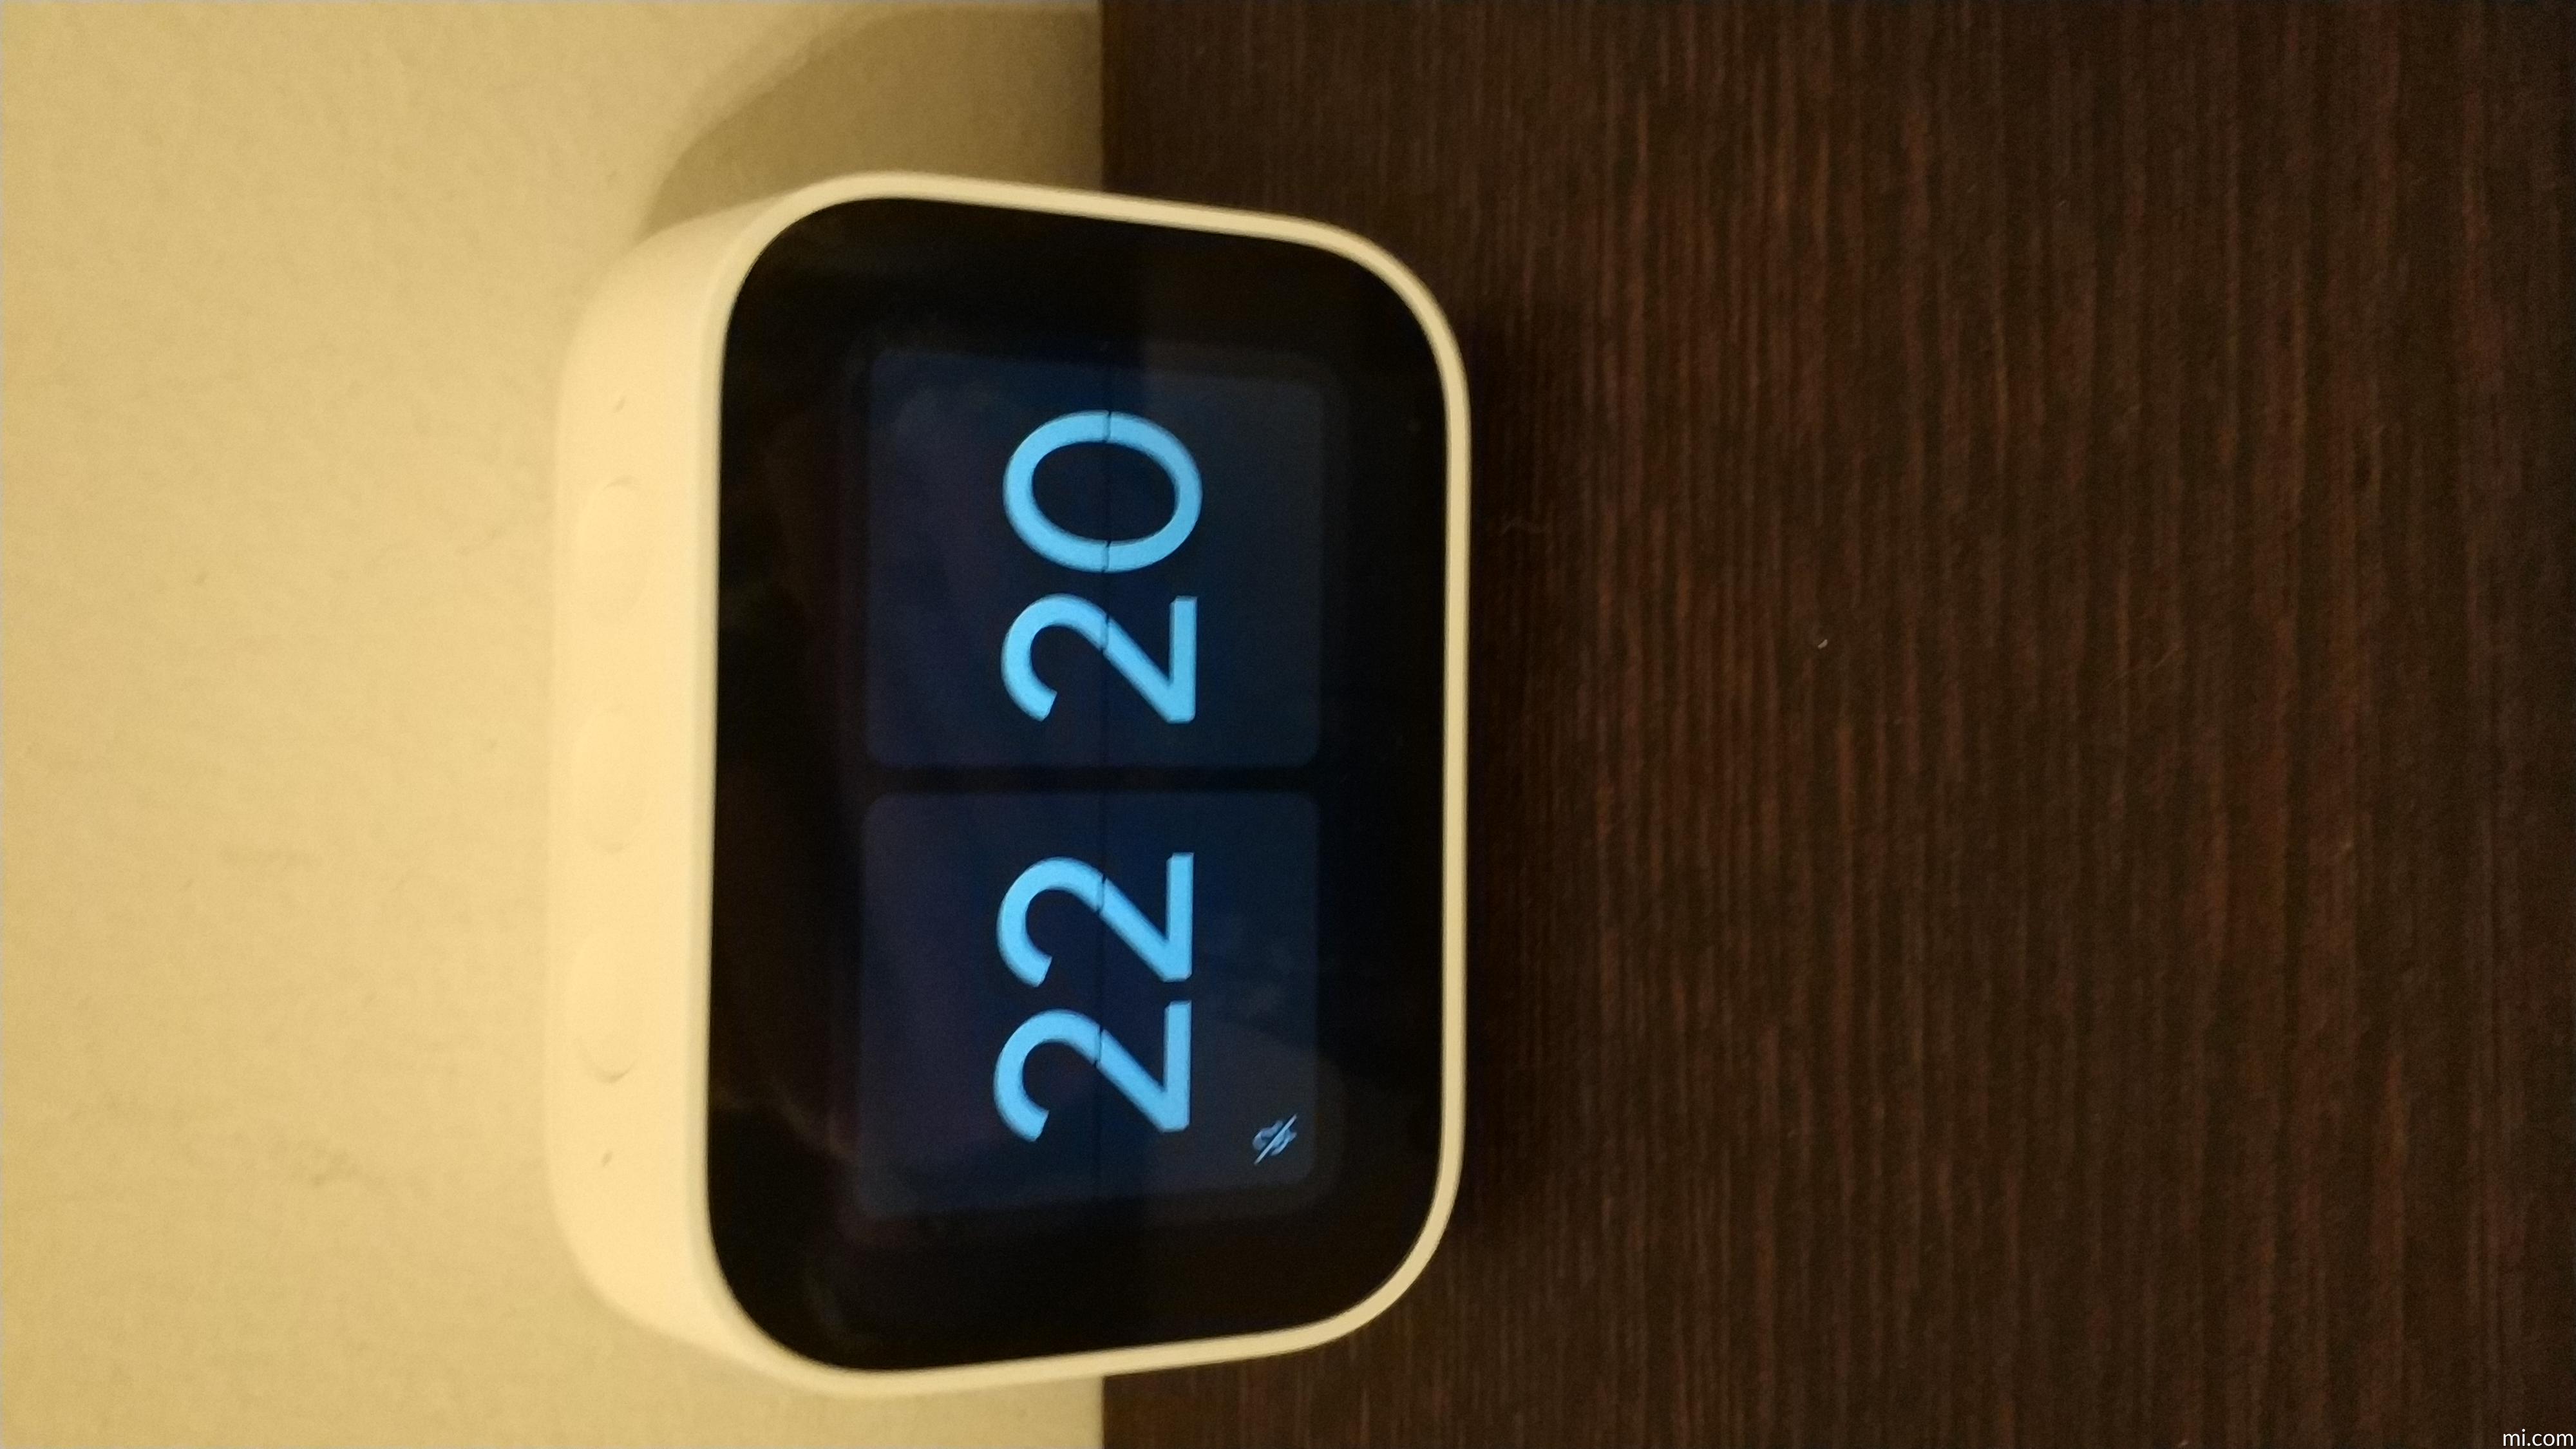 Mi smart clock wifi e bluetooth xiaomi con orologio sveglia wireless x04g,  supporta spotify ok google - xiaomi-smart-clock 